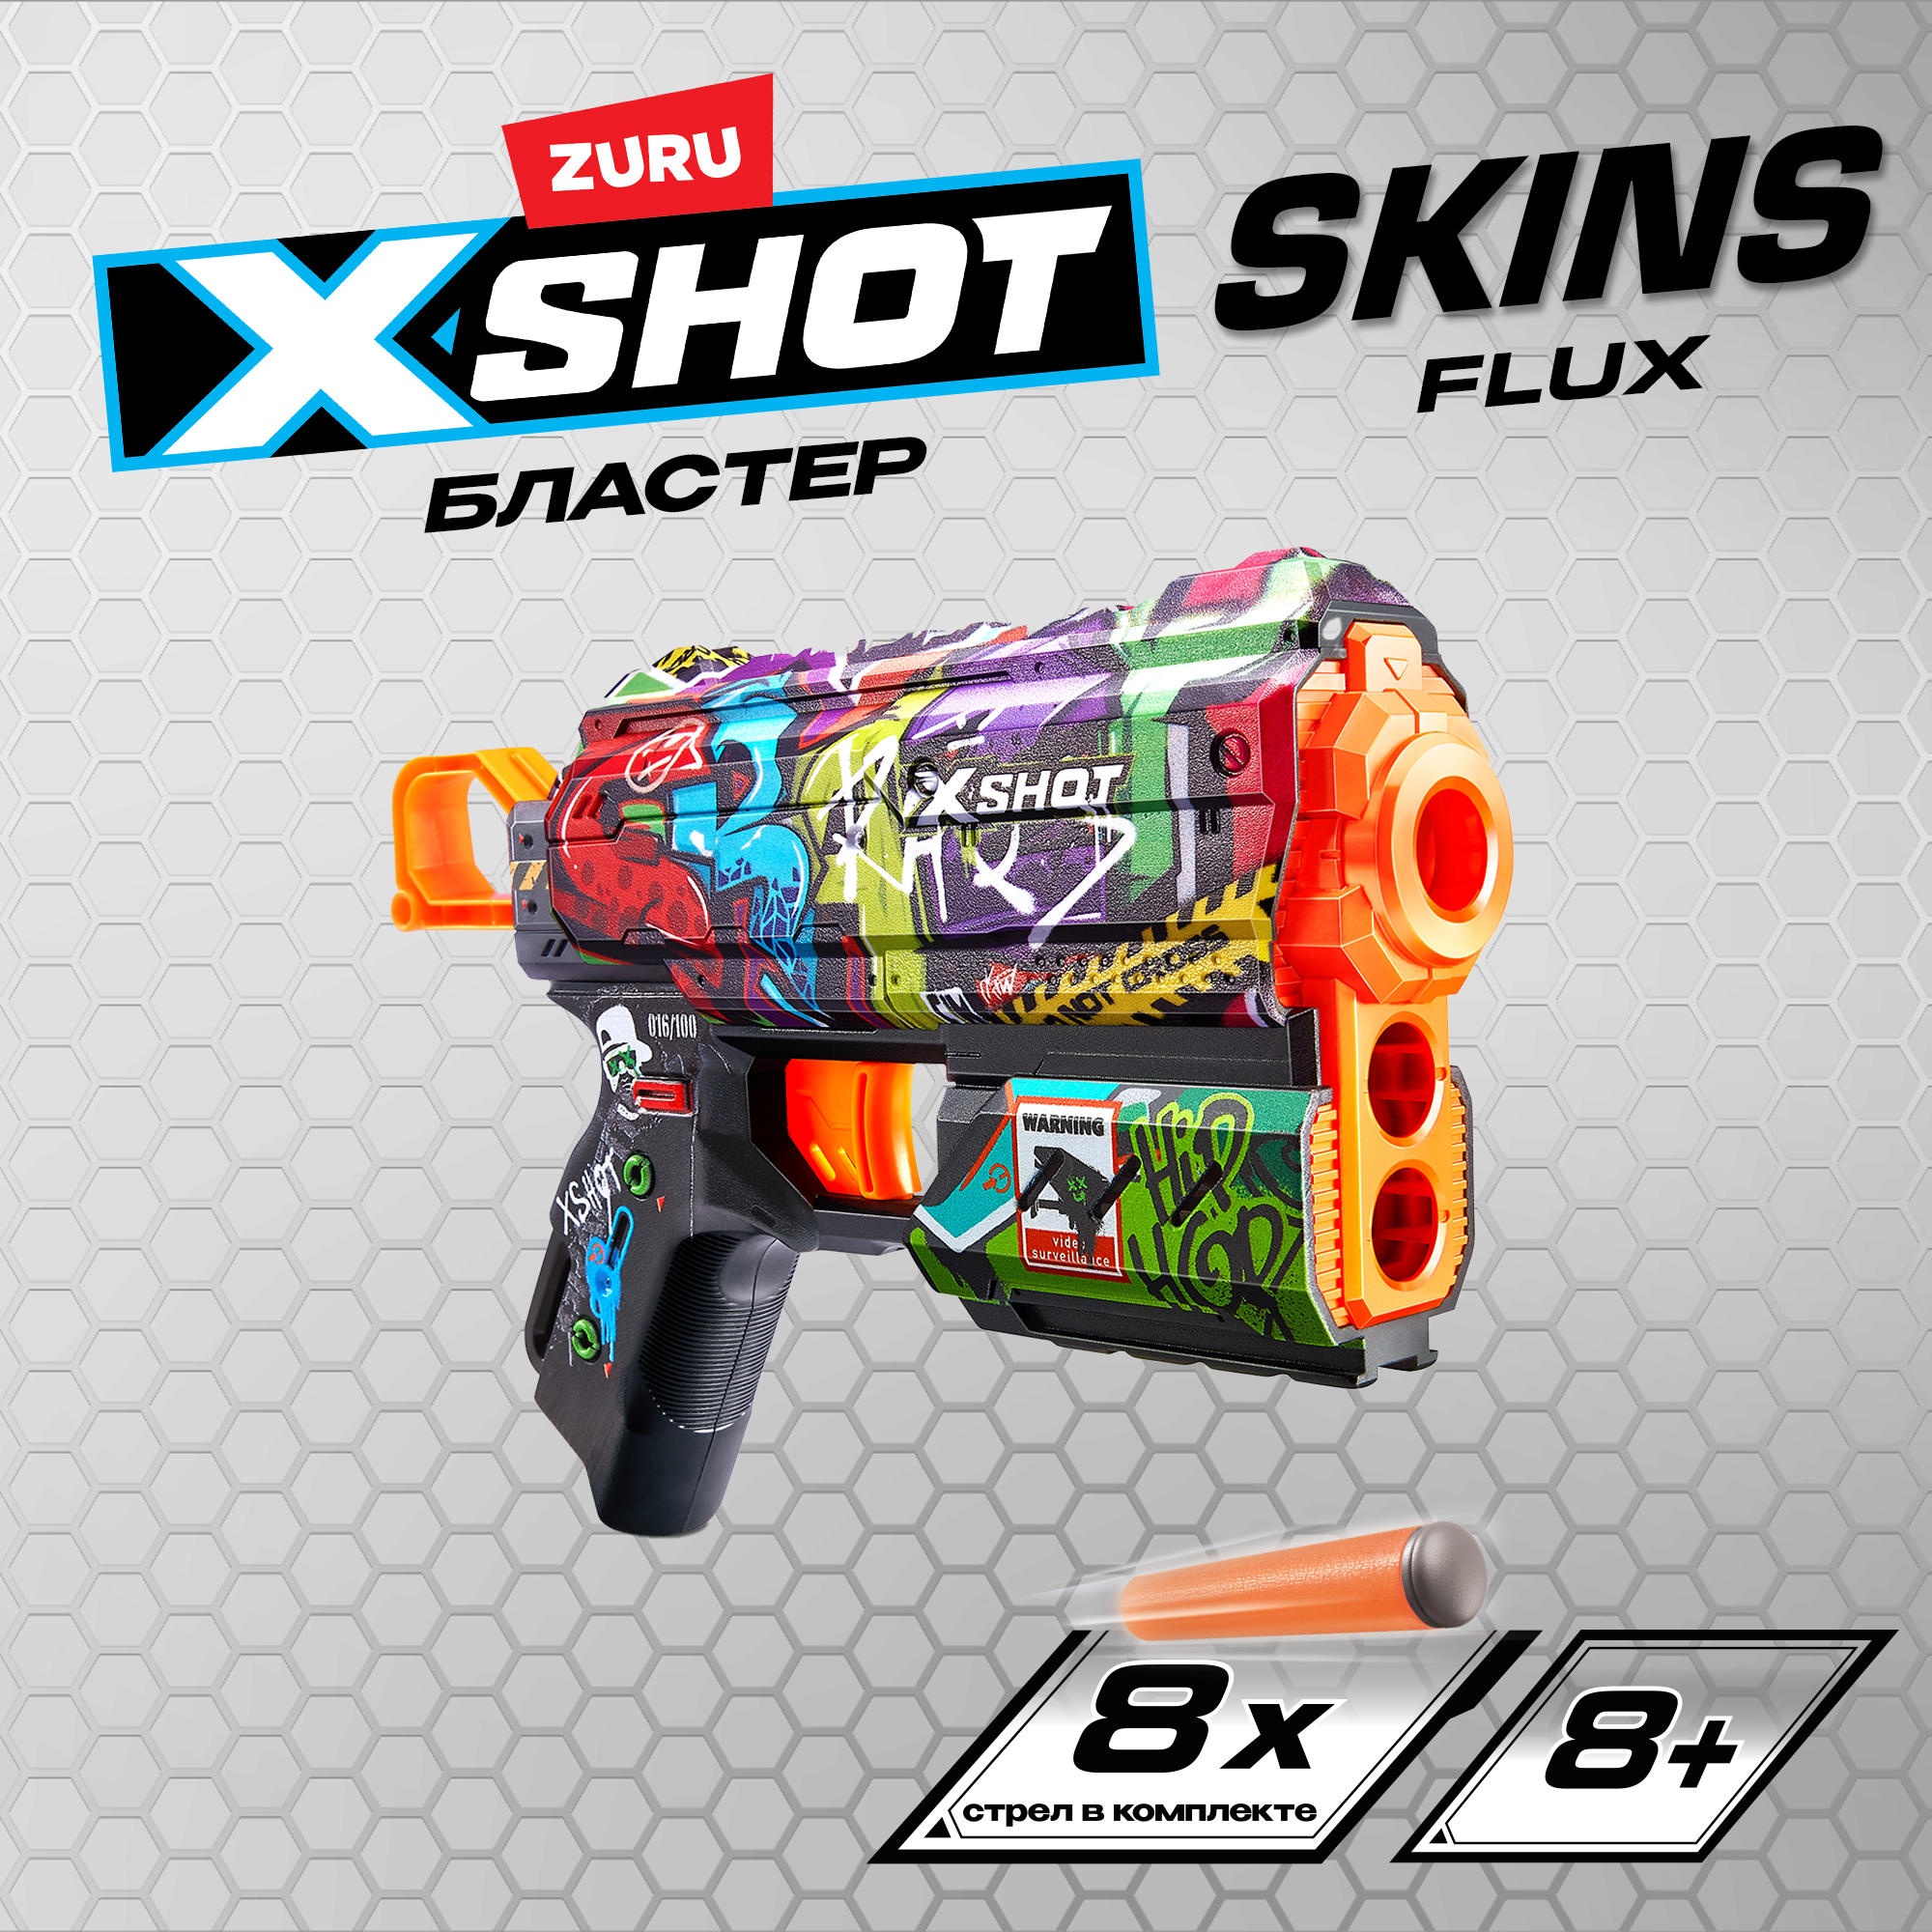 Набор для стрельбы X-SHOT  Скинс флакс Граффити 36516B - фото 1